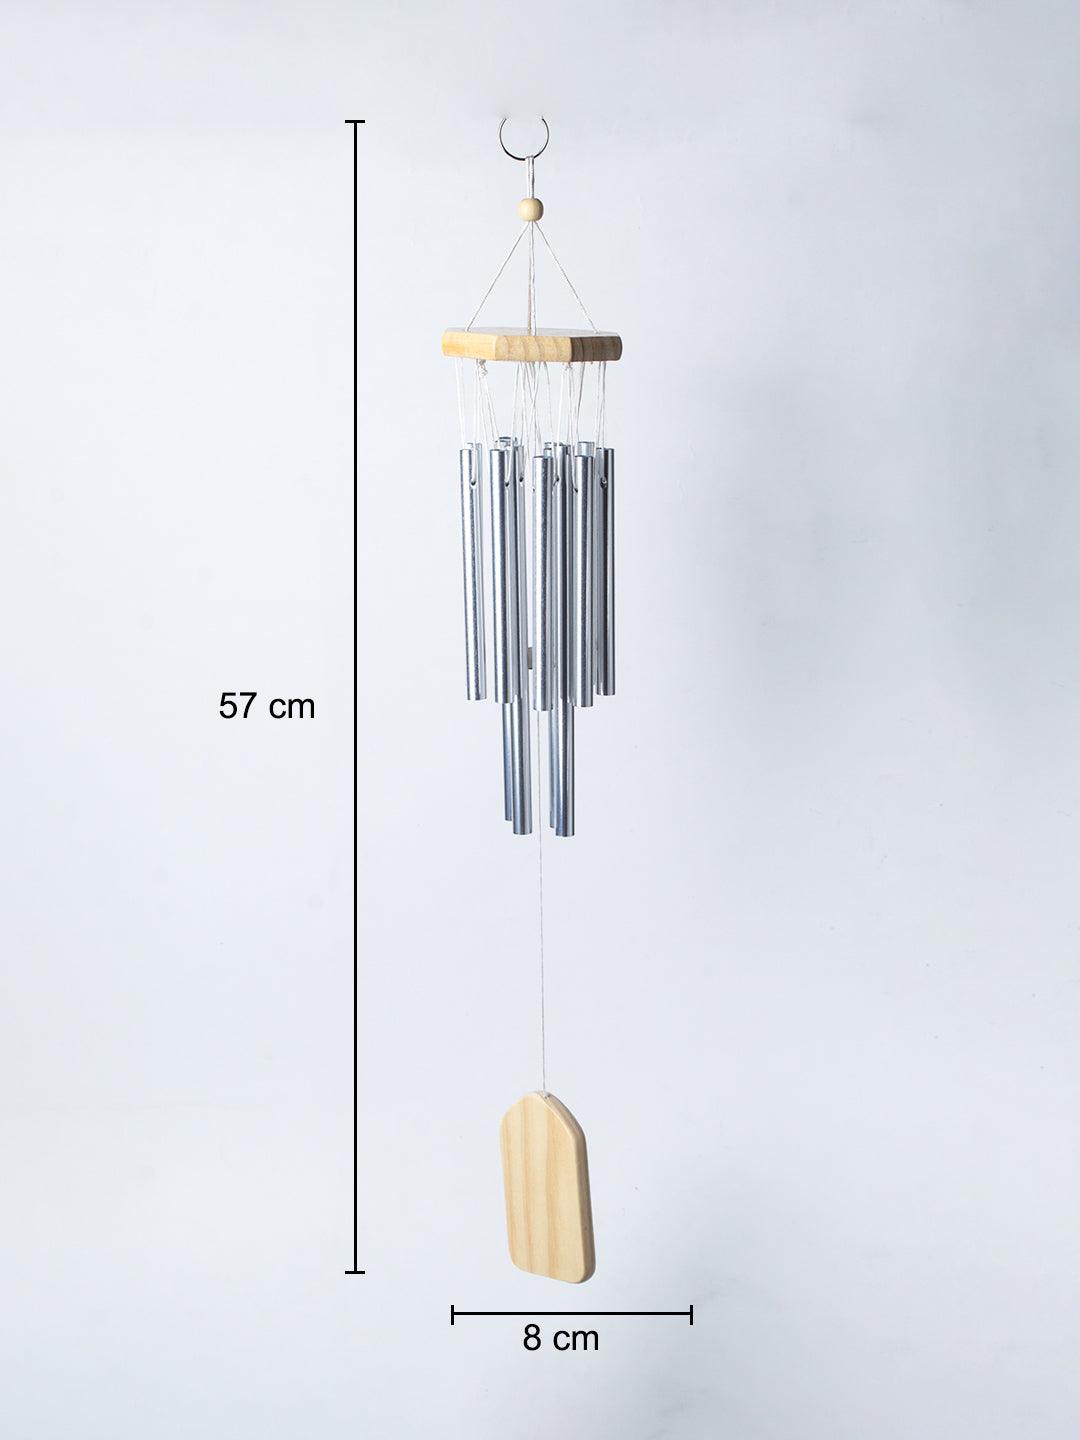 Unique Silver Decorative Wind Chime For Home - 8.5 X 8.5 X 57 Cm - 6